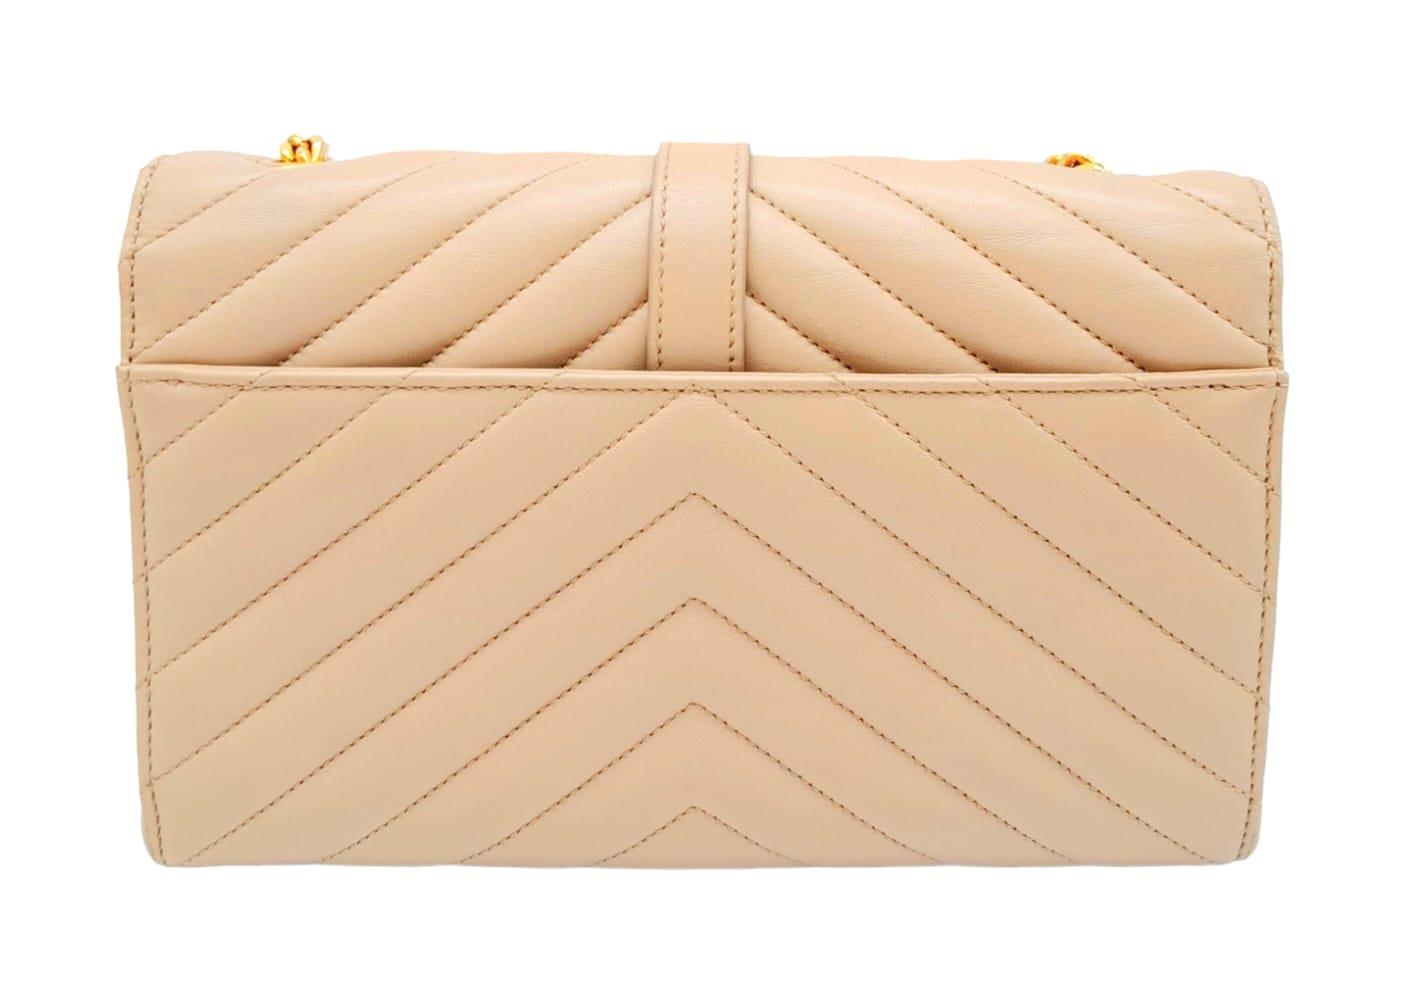 A Saint Laurent envelope shoulder bag, soft beige calfskin with gold hardware and strap, press - Image 4 of 11